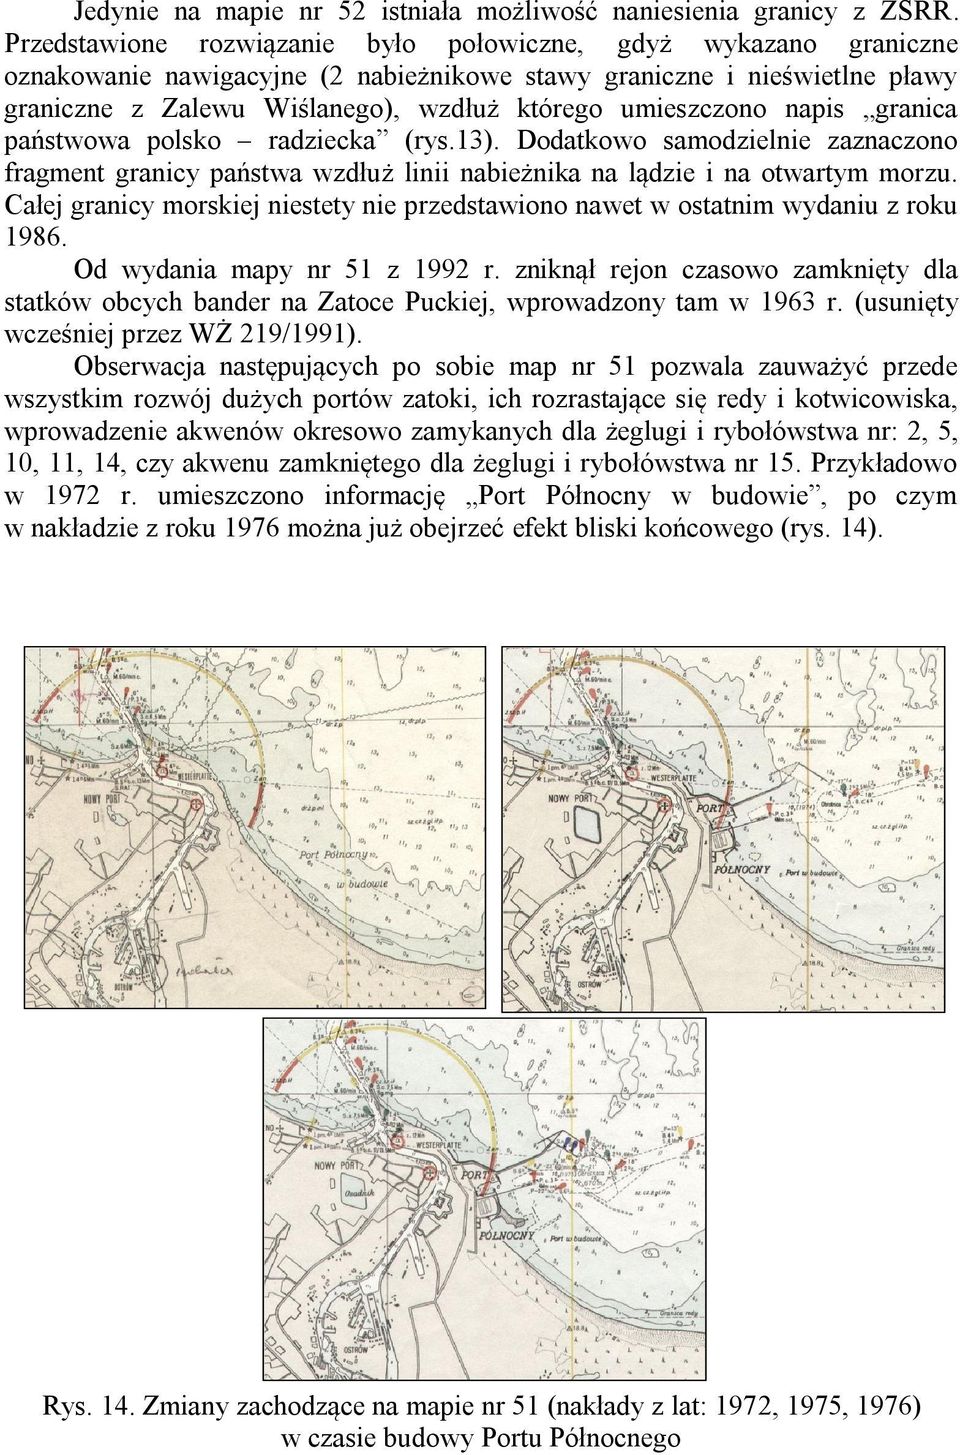 umieszczono napis granica państwowa polsko radziecka (rys.13). Dodatkowo samodzielnie zaznaczono fragment granicy państwa wzdłuż linii nabieżnika na lądzie i na otwartym morzu.